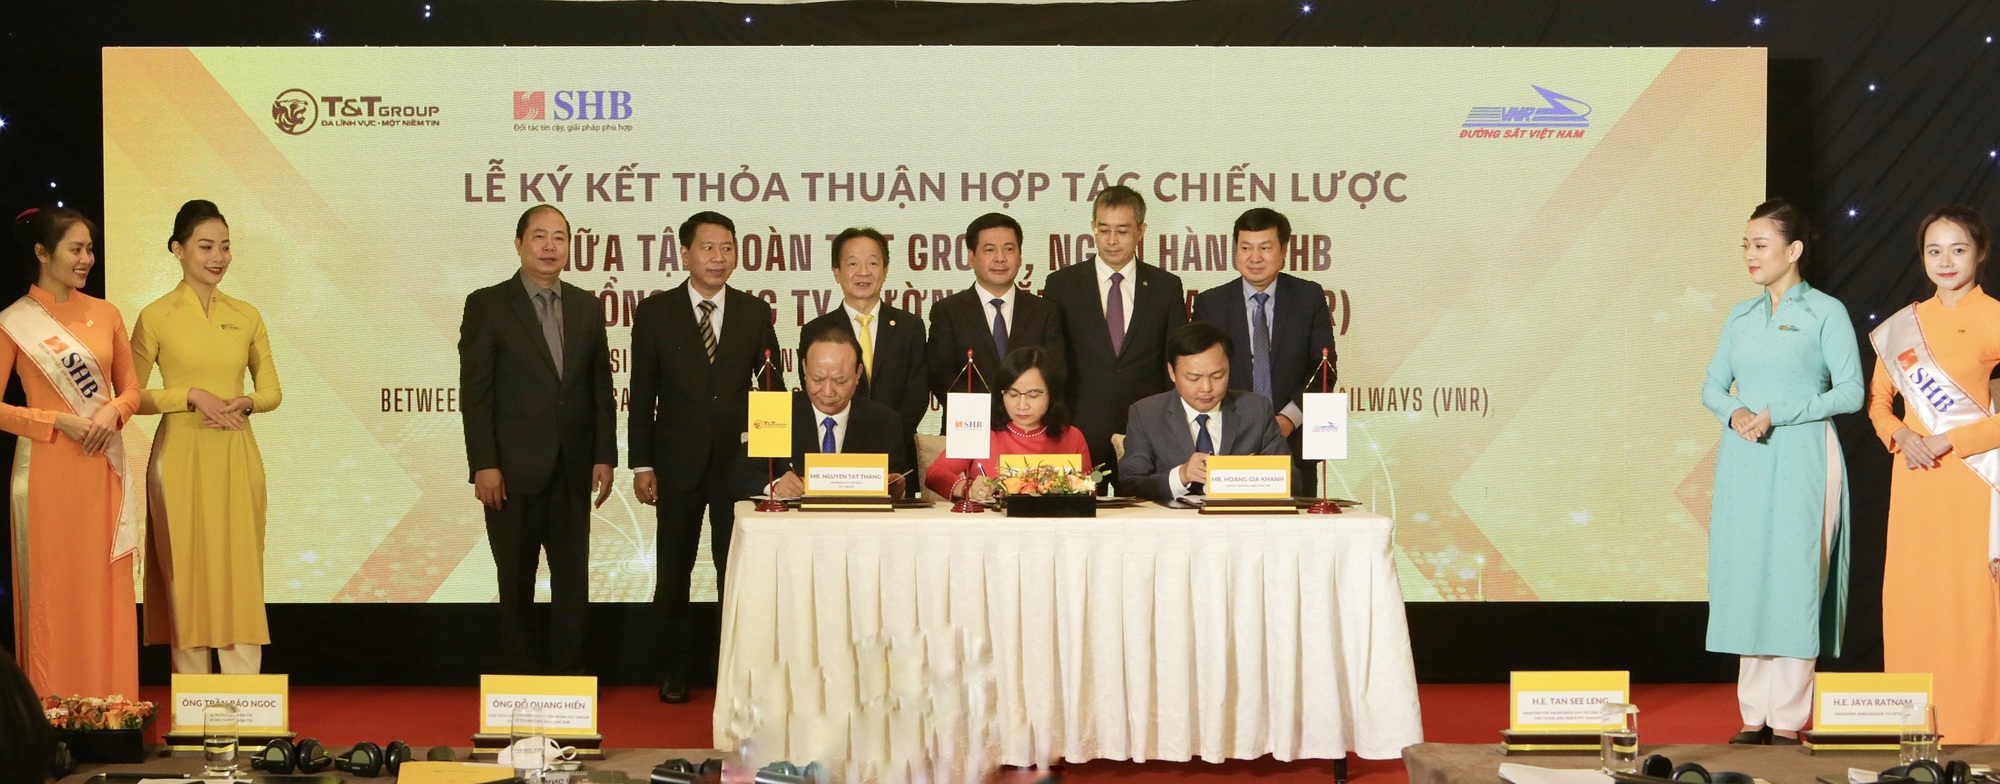 Đại diện Lãnh đạo Ngân hàng SHB, Tập đoàn T&T Group và Tổng Công ty Đường sắt Việt Nam ký thỏa thuận hợp tác chiến lược